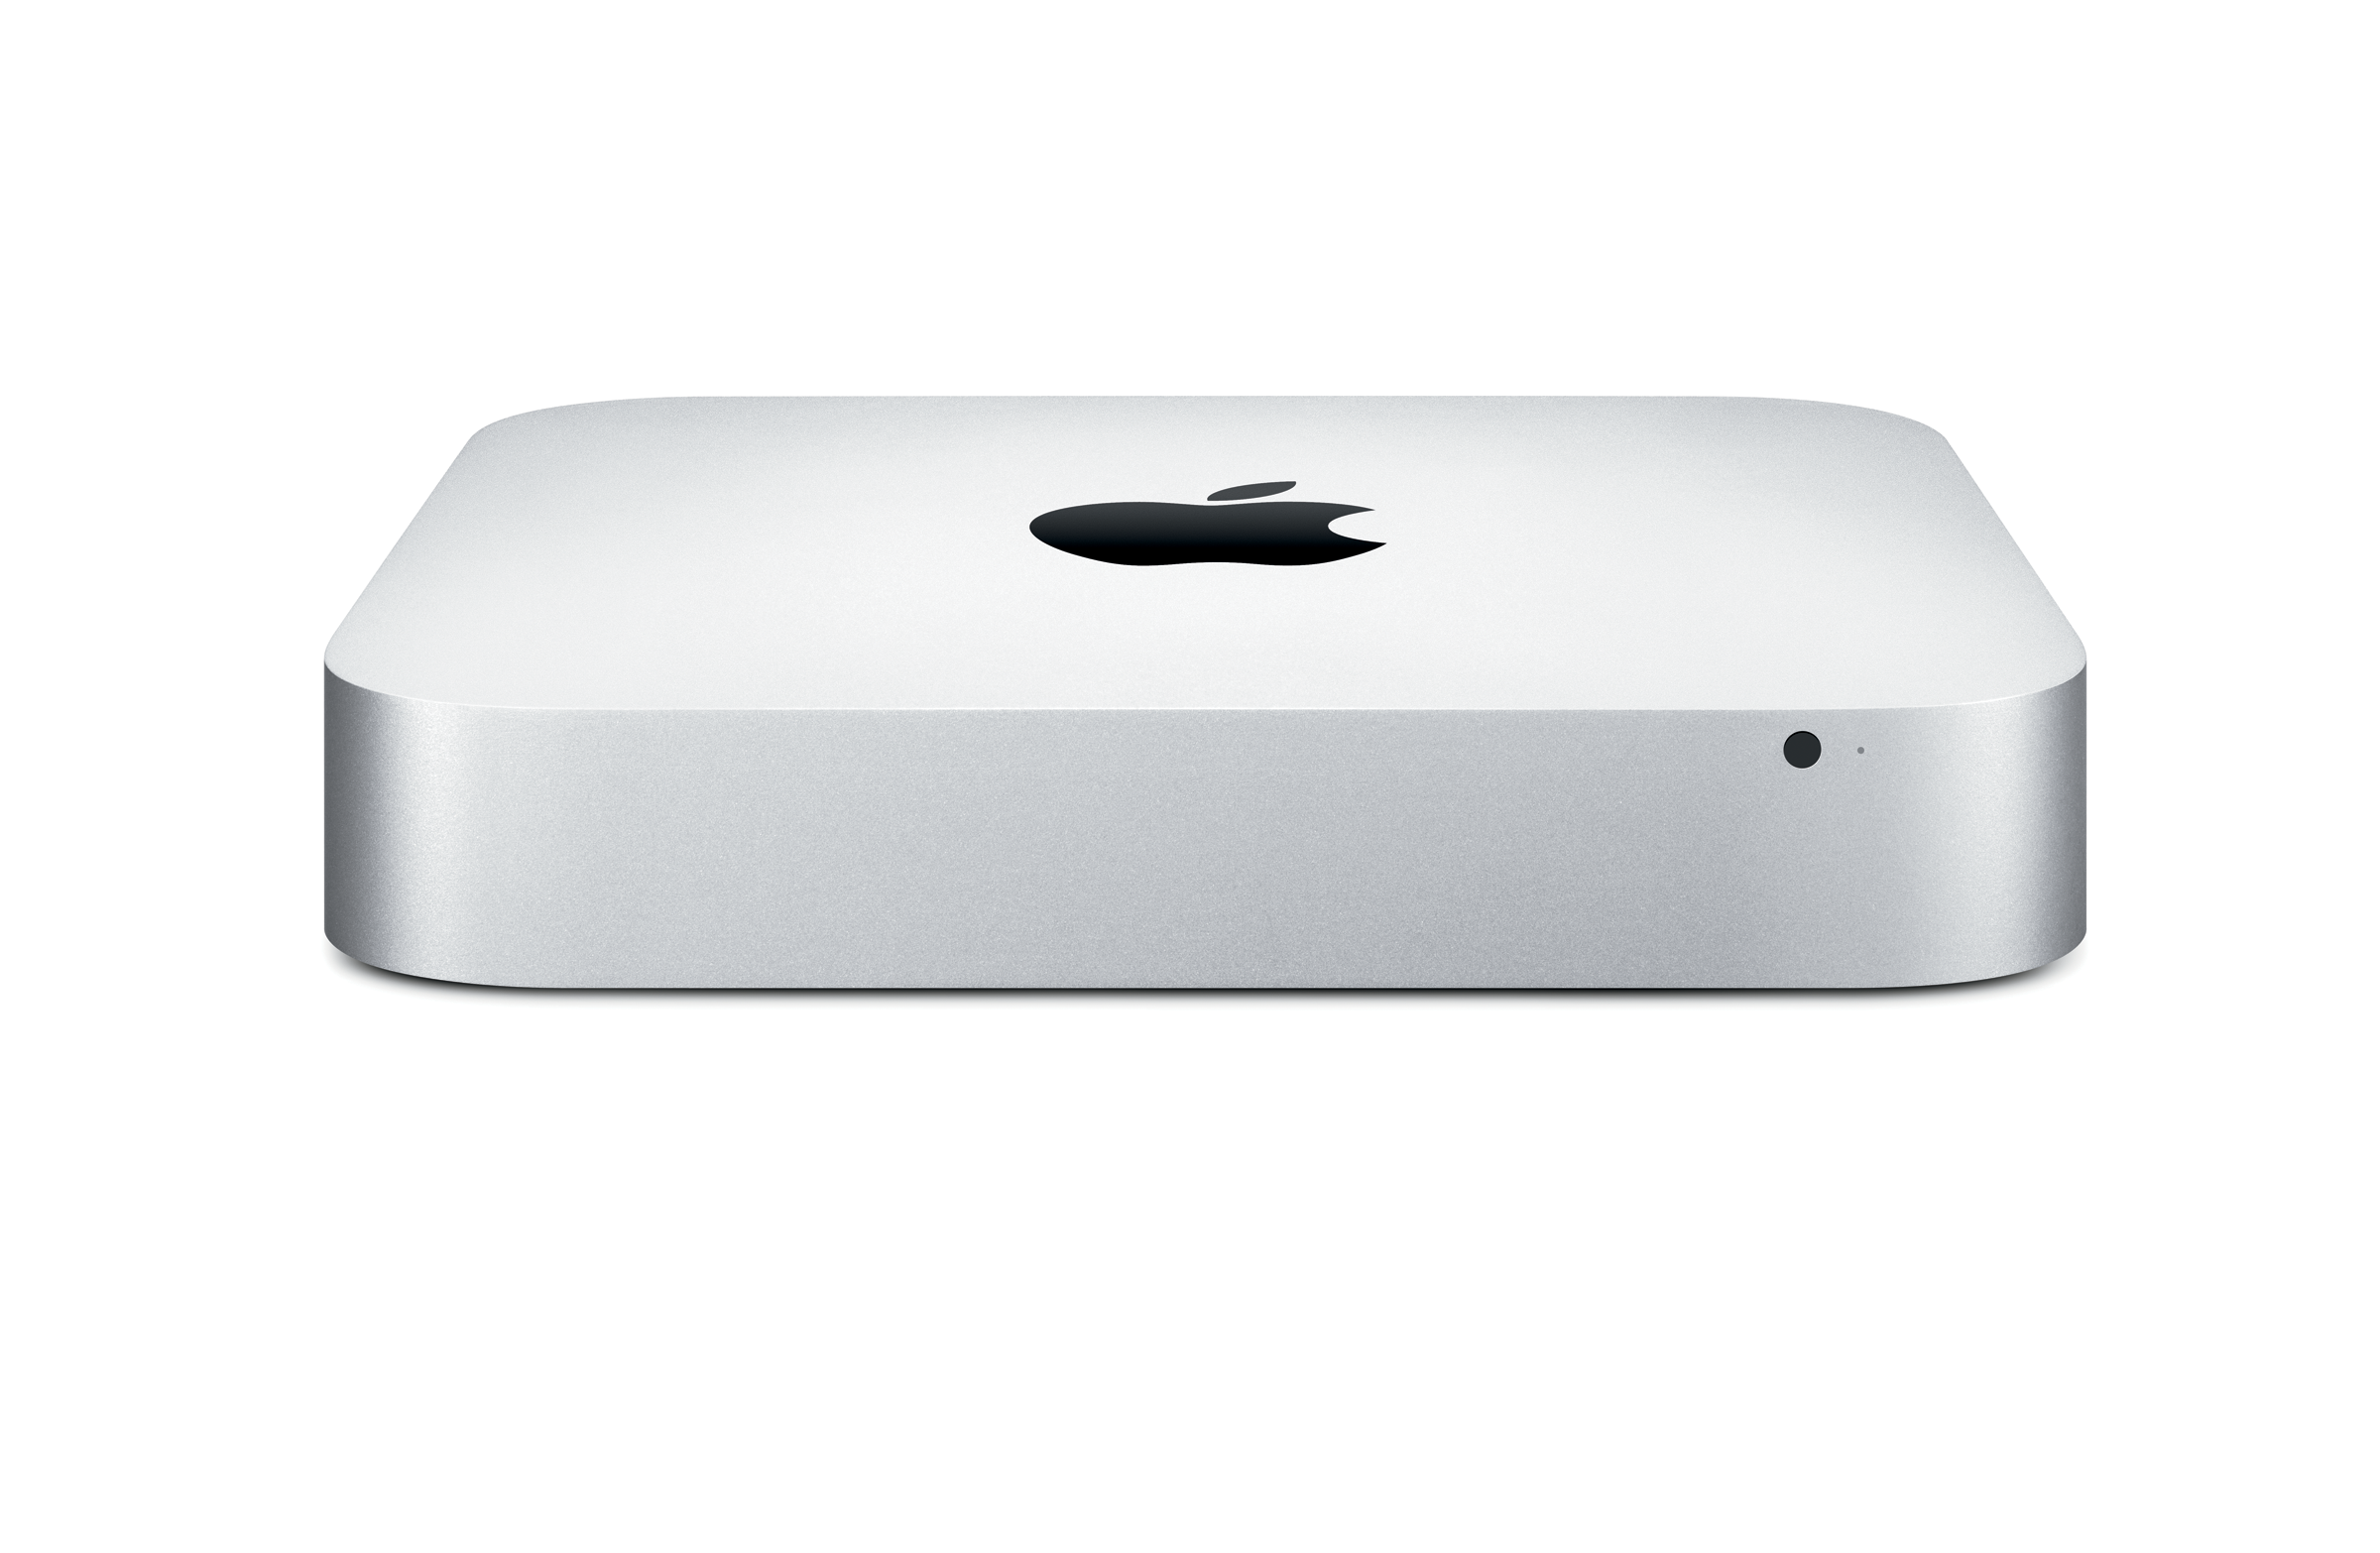 Apple Mac Mini Server, una recensione piccola piccola